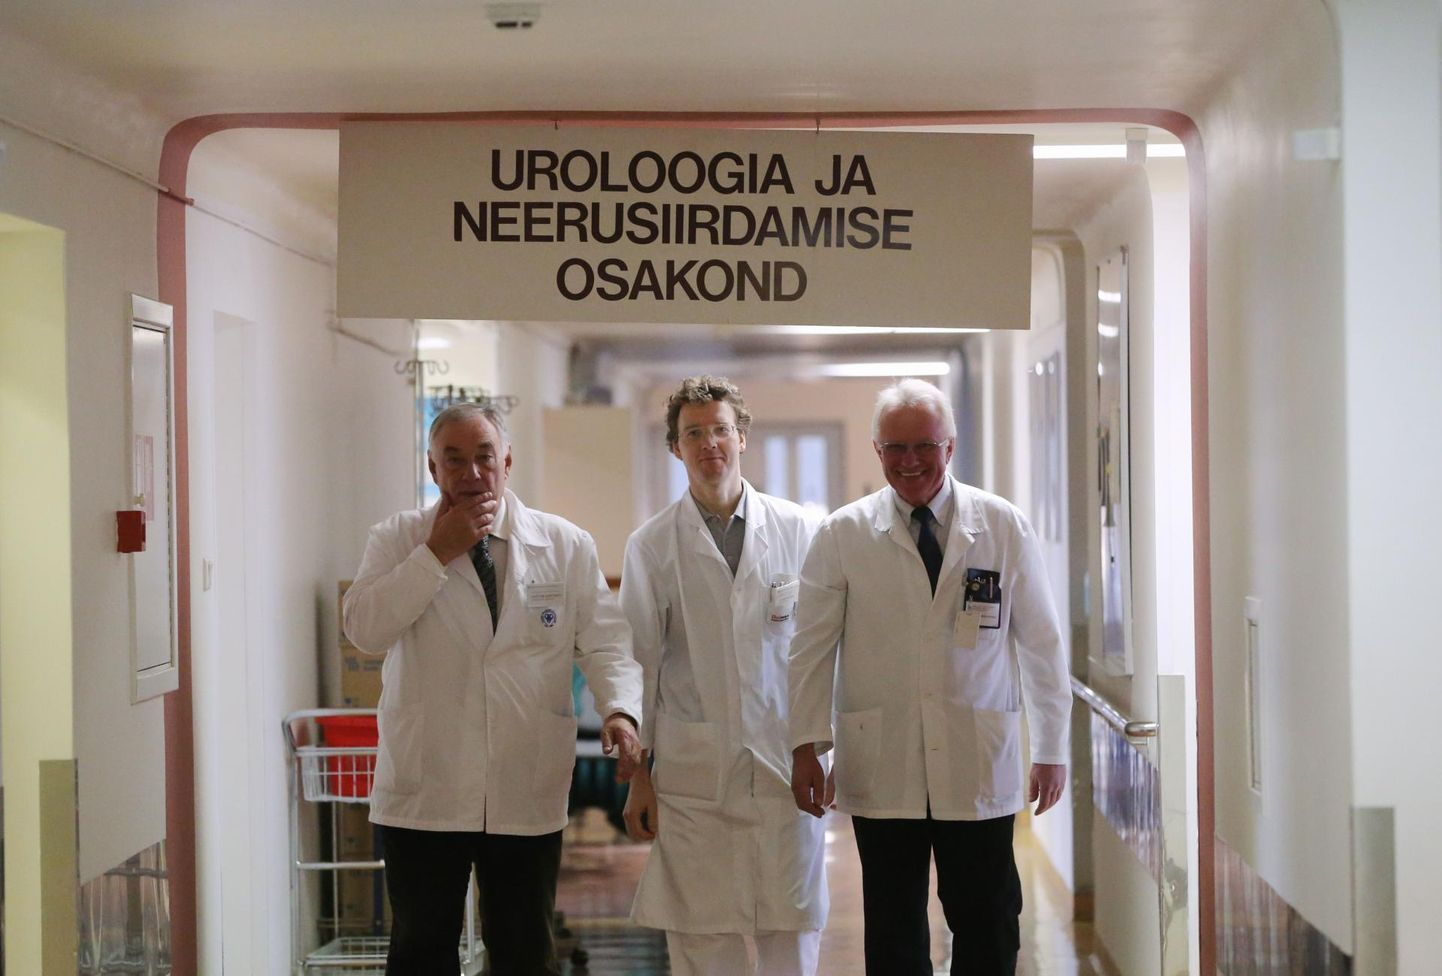 Pildil uroloogid Peeter Dmitriev (vasakult), Jaanus Kahu ja Aleksander Lõhmus.